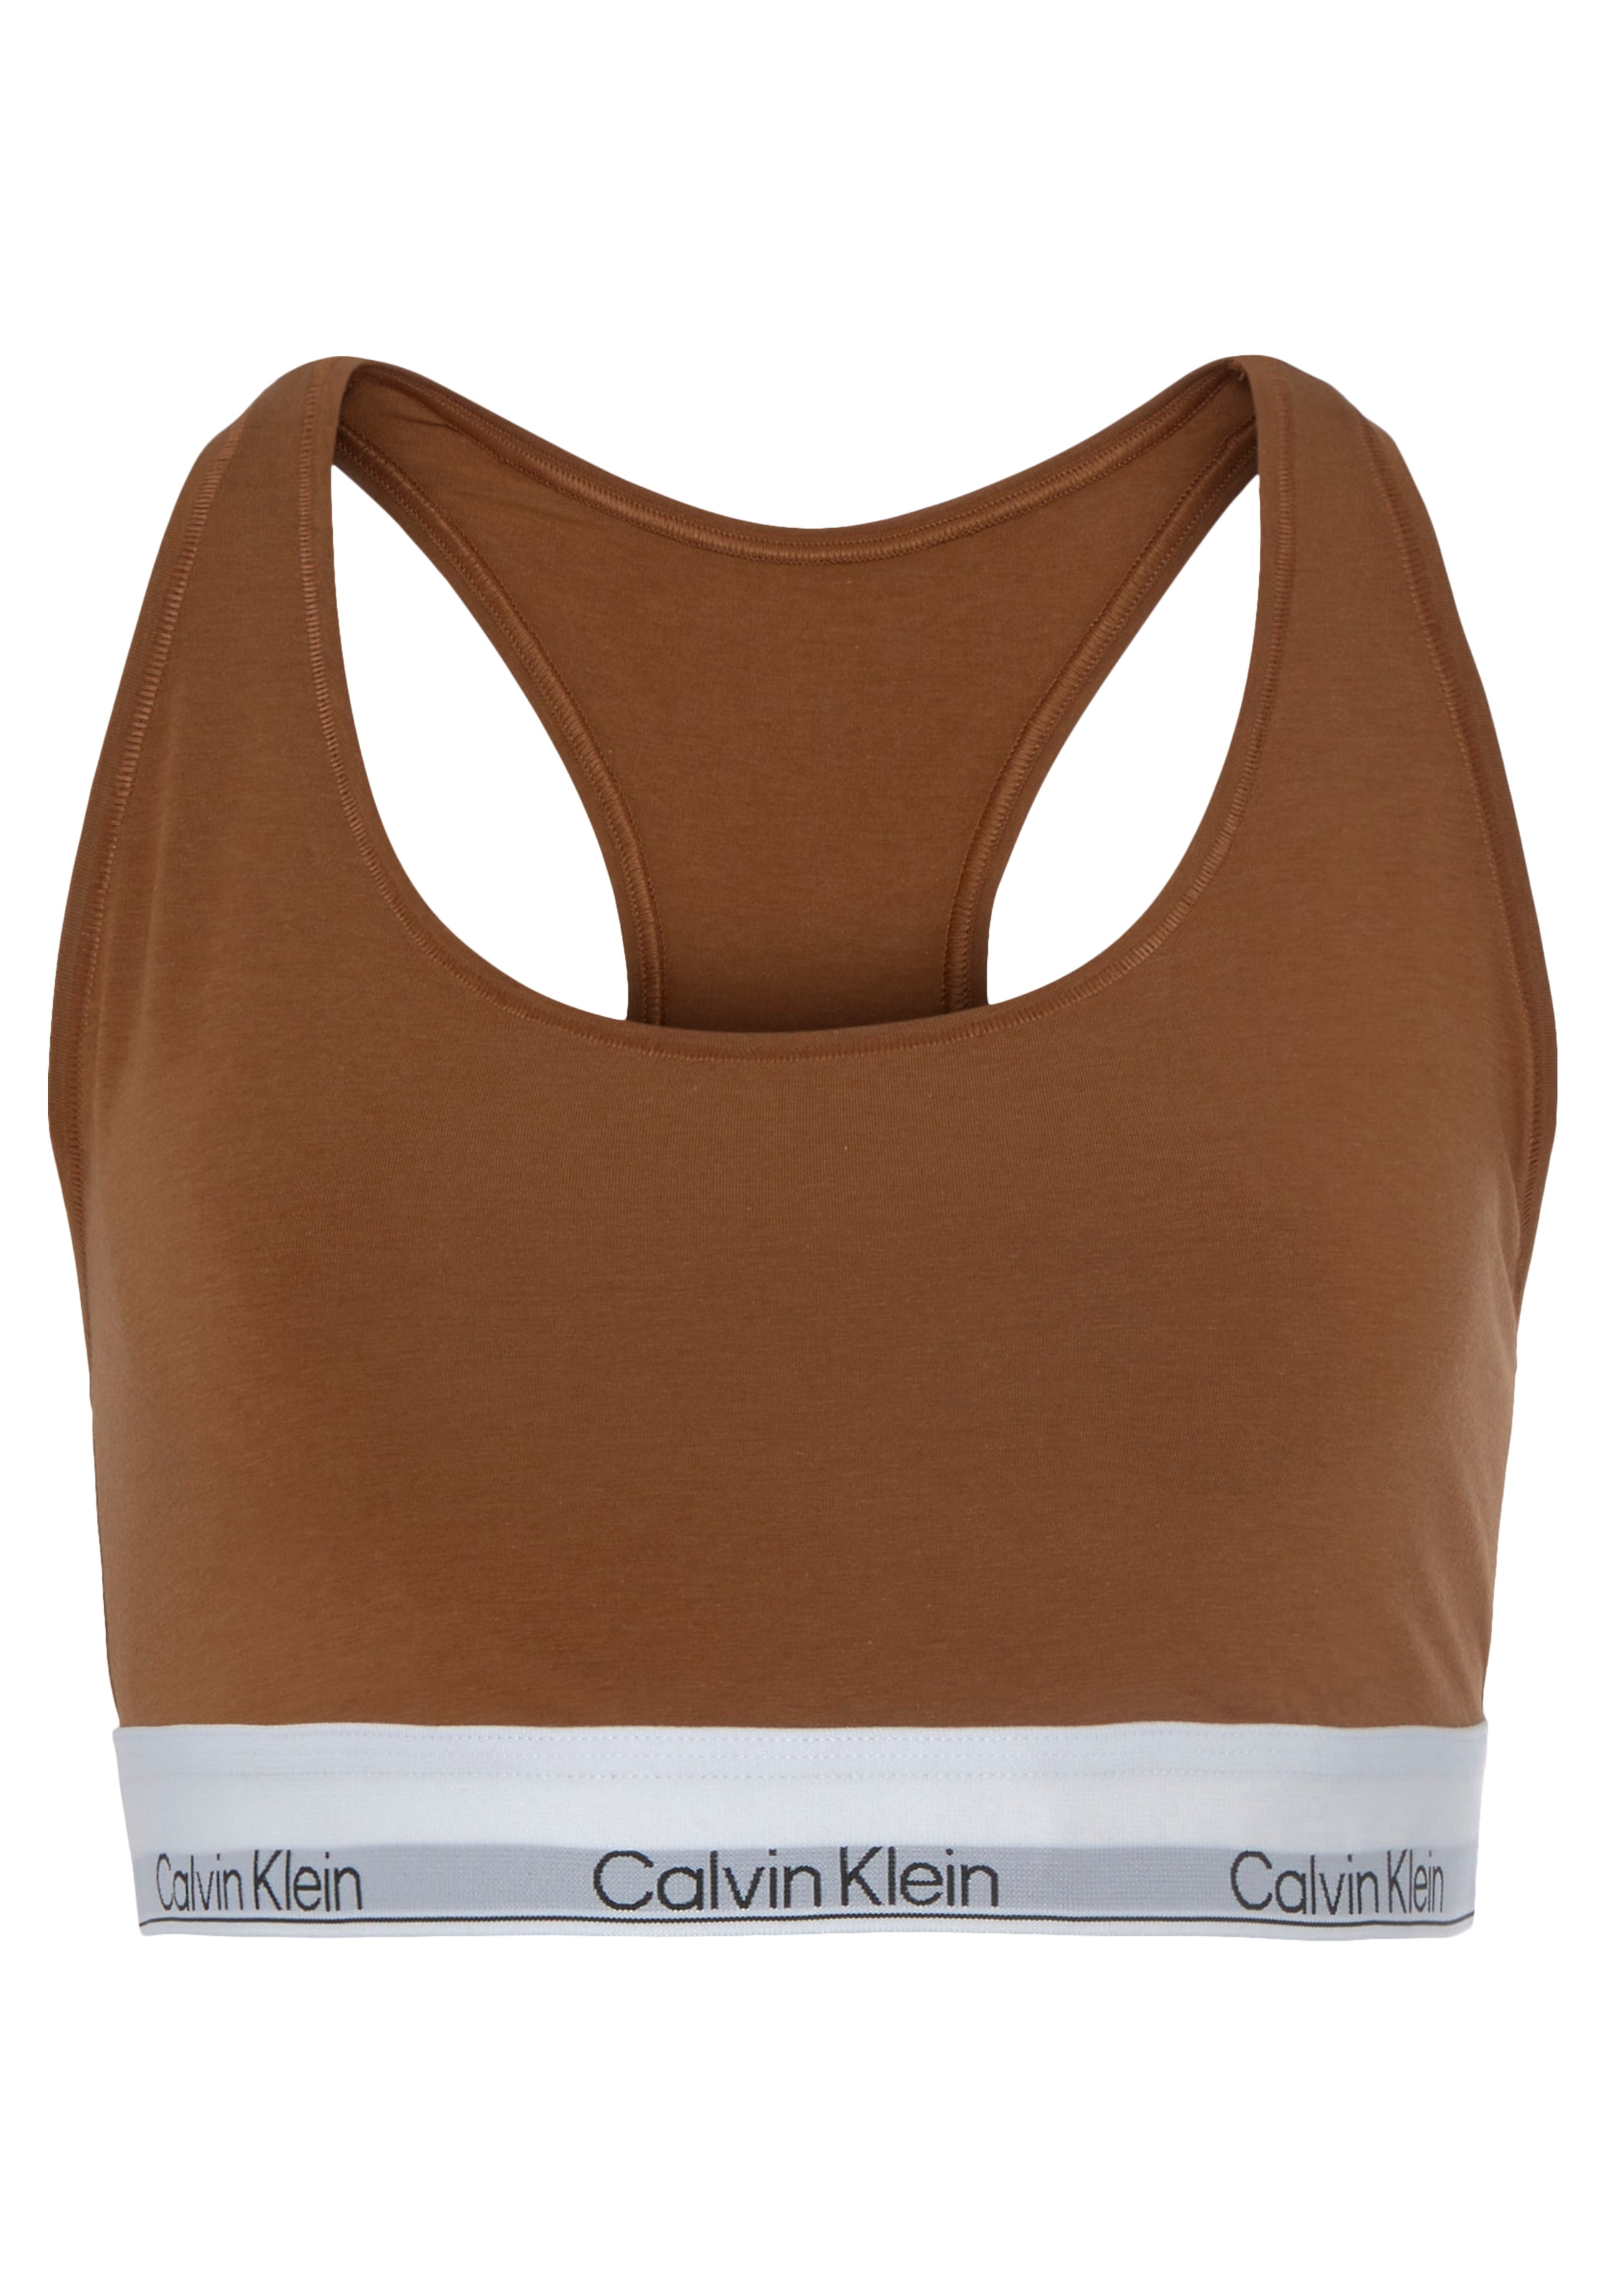 ♕ Calvin Klein bestellen auf dem Logodruck Bralette, Elastik-Unterbrustband mit versandkostenfrei